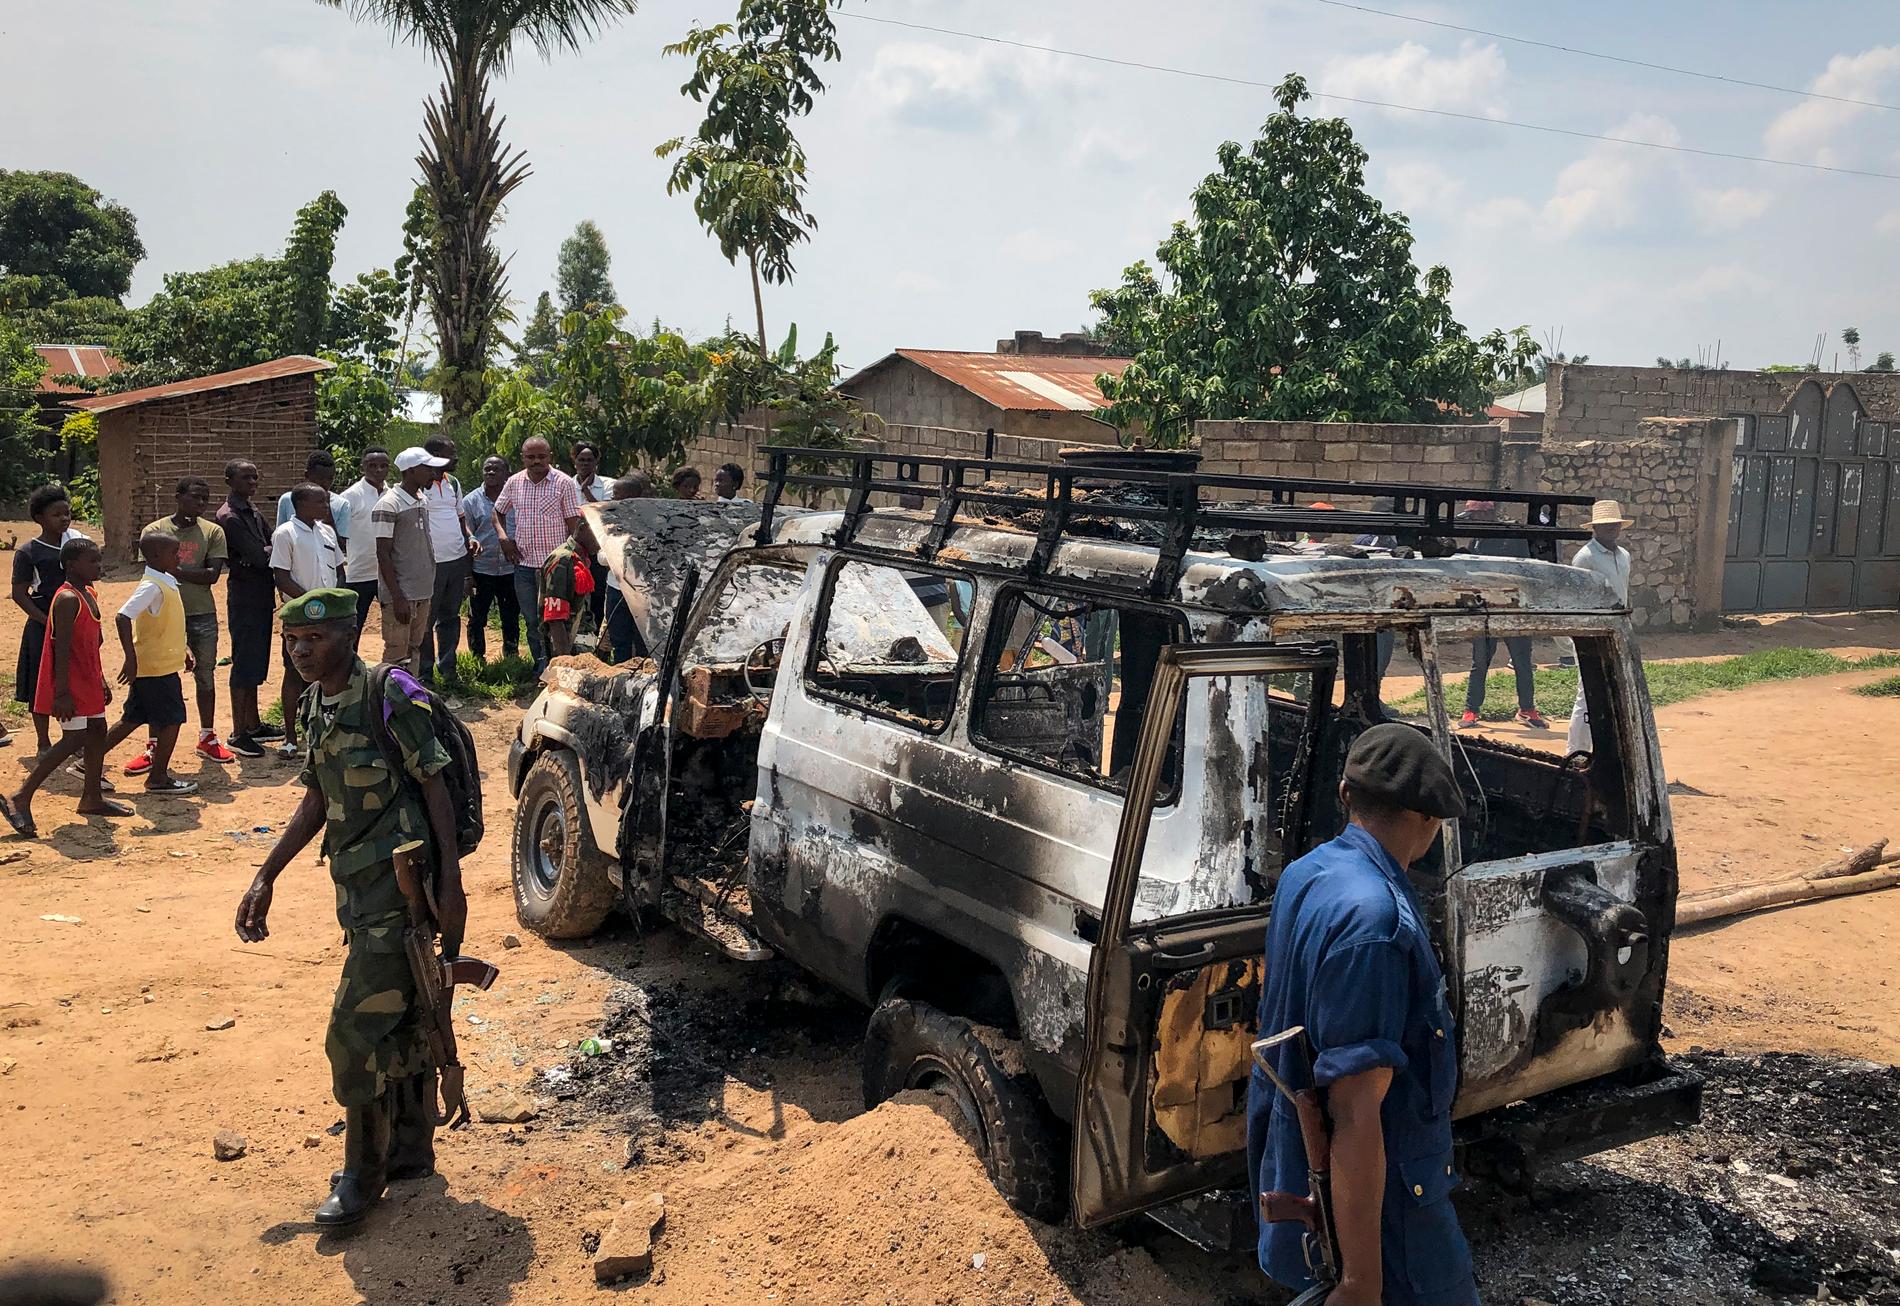 Ett fordon tillhörande hälsoministeriets ebolainsats i Kongo-Kinshasa attackerades i Beni i slutet av juni och säkerhetsstyrkor tillkallades. Insatsen mot ebolautbrottet i det konfliktdrabbade Kongo-Kinshasa har utsatts för nära 200 attacker bara sedan januari 2019.